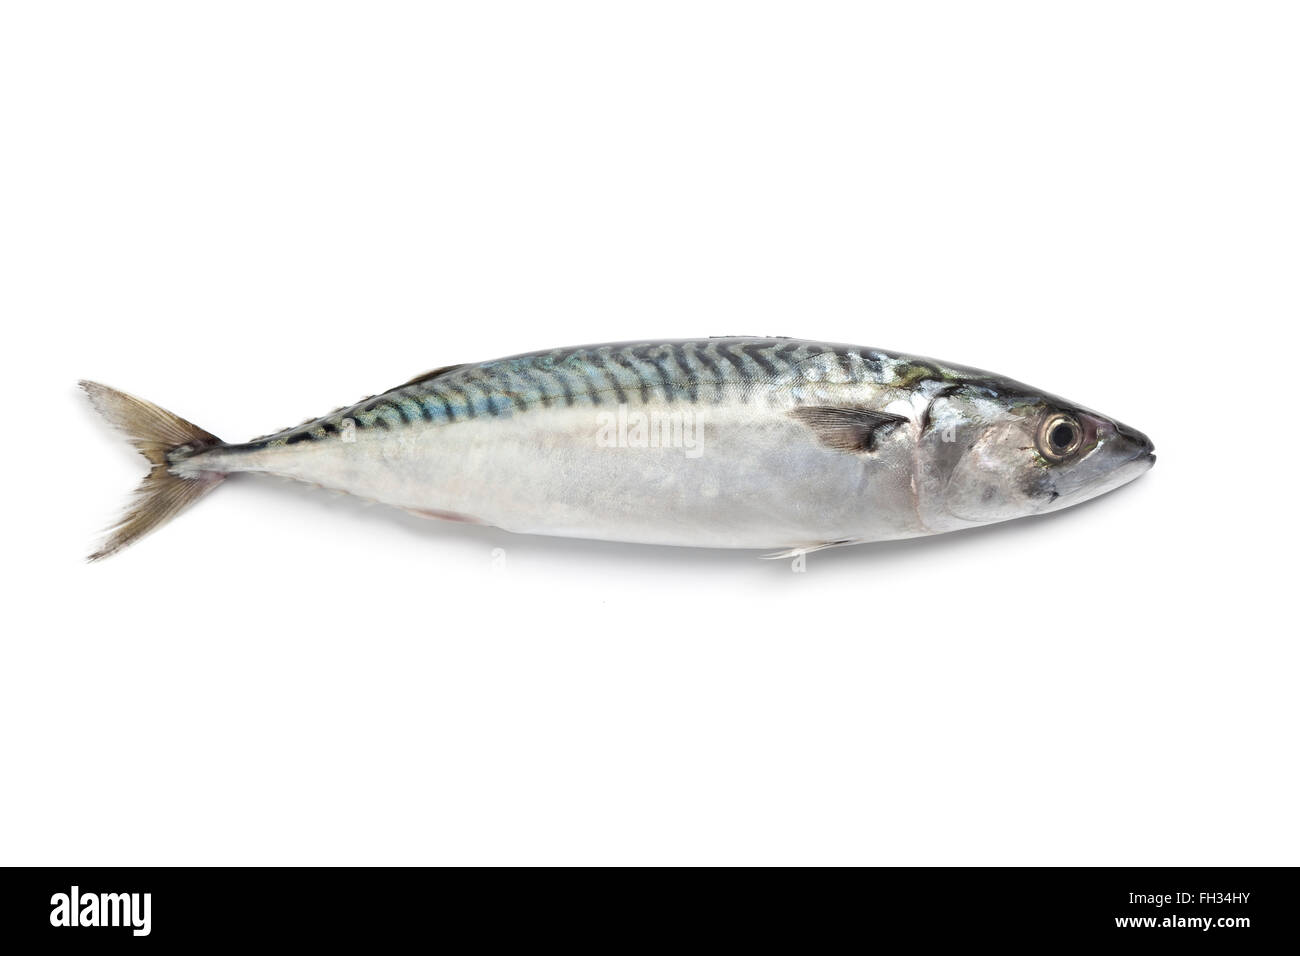 Whole single fresh mackerel fish on white background Stock Photo